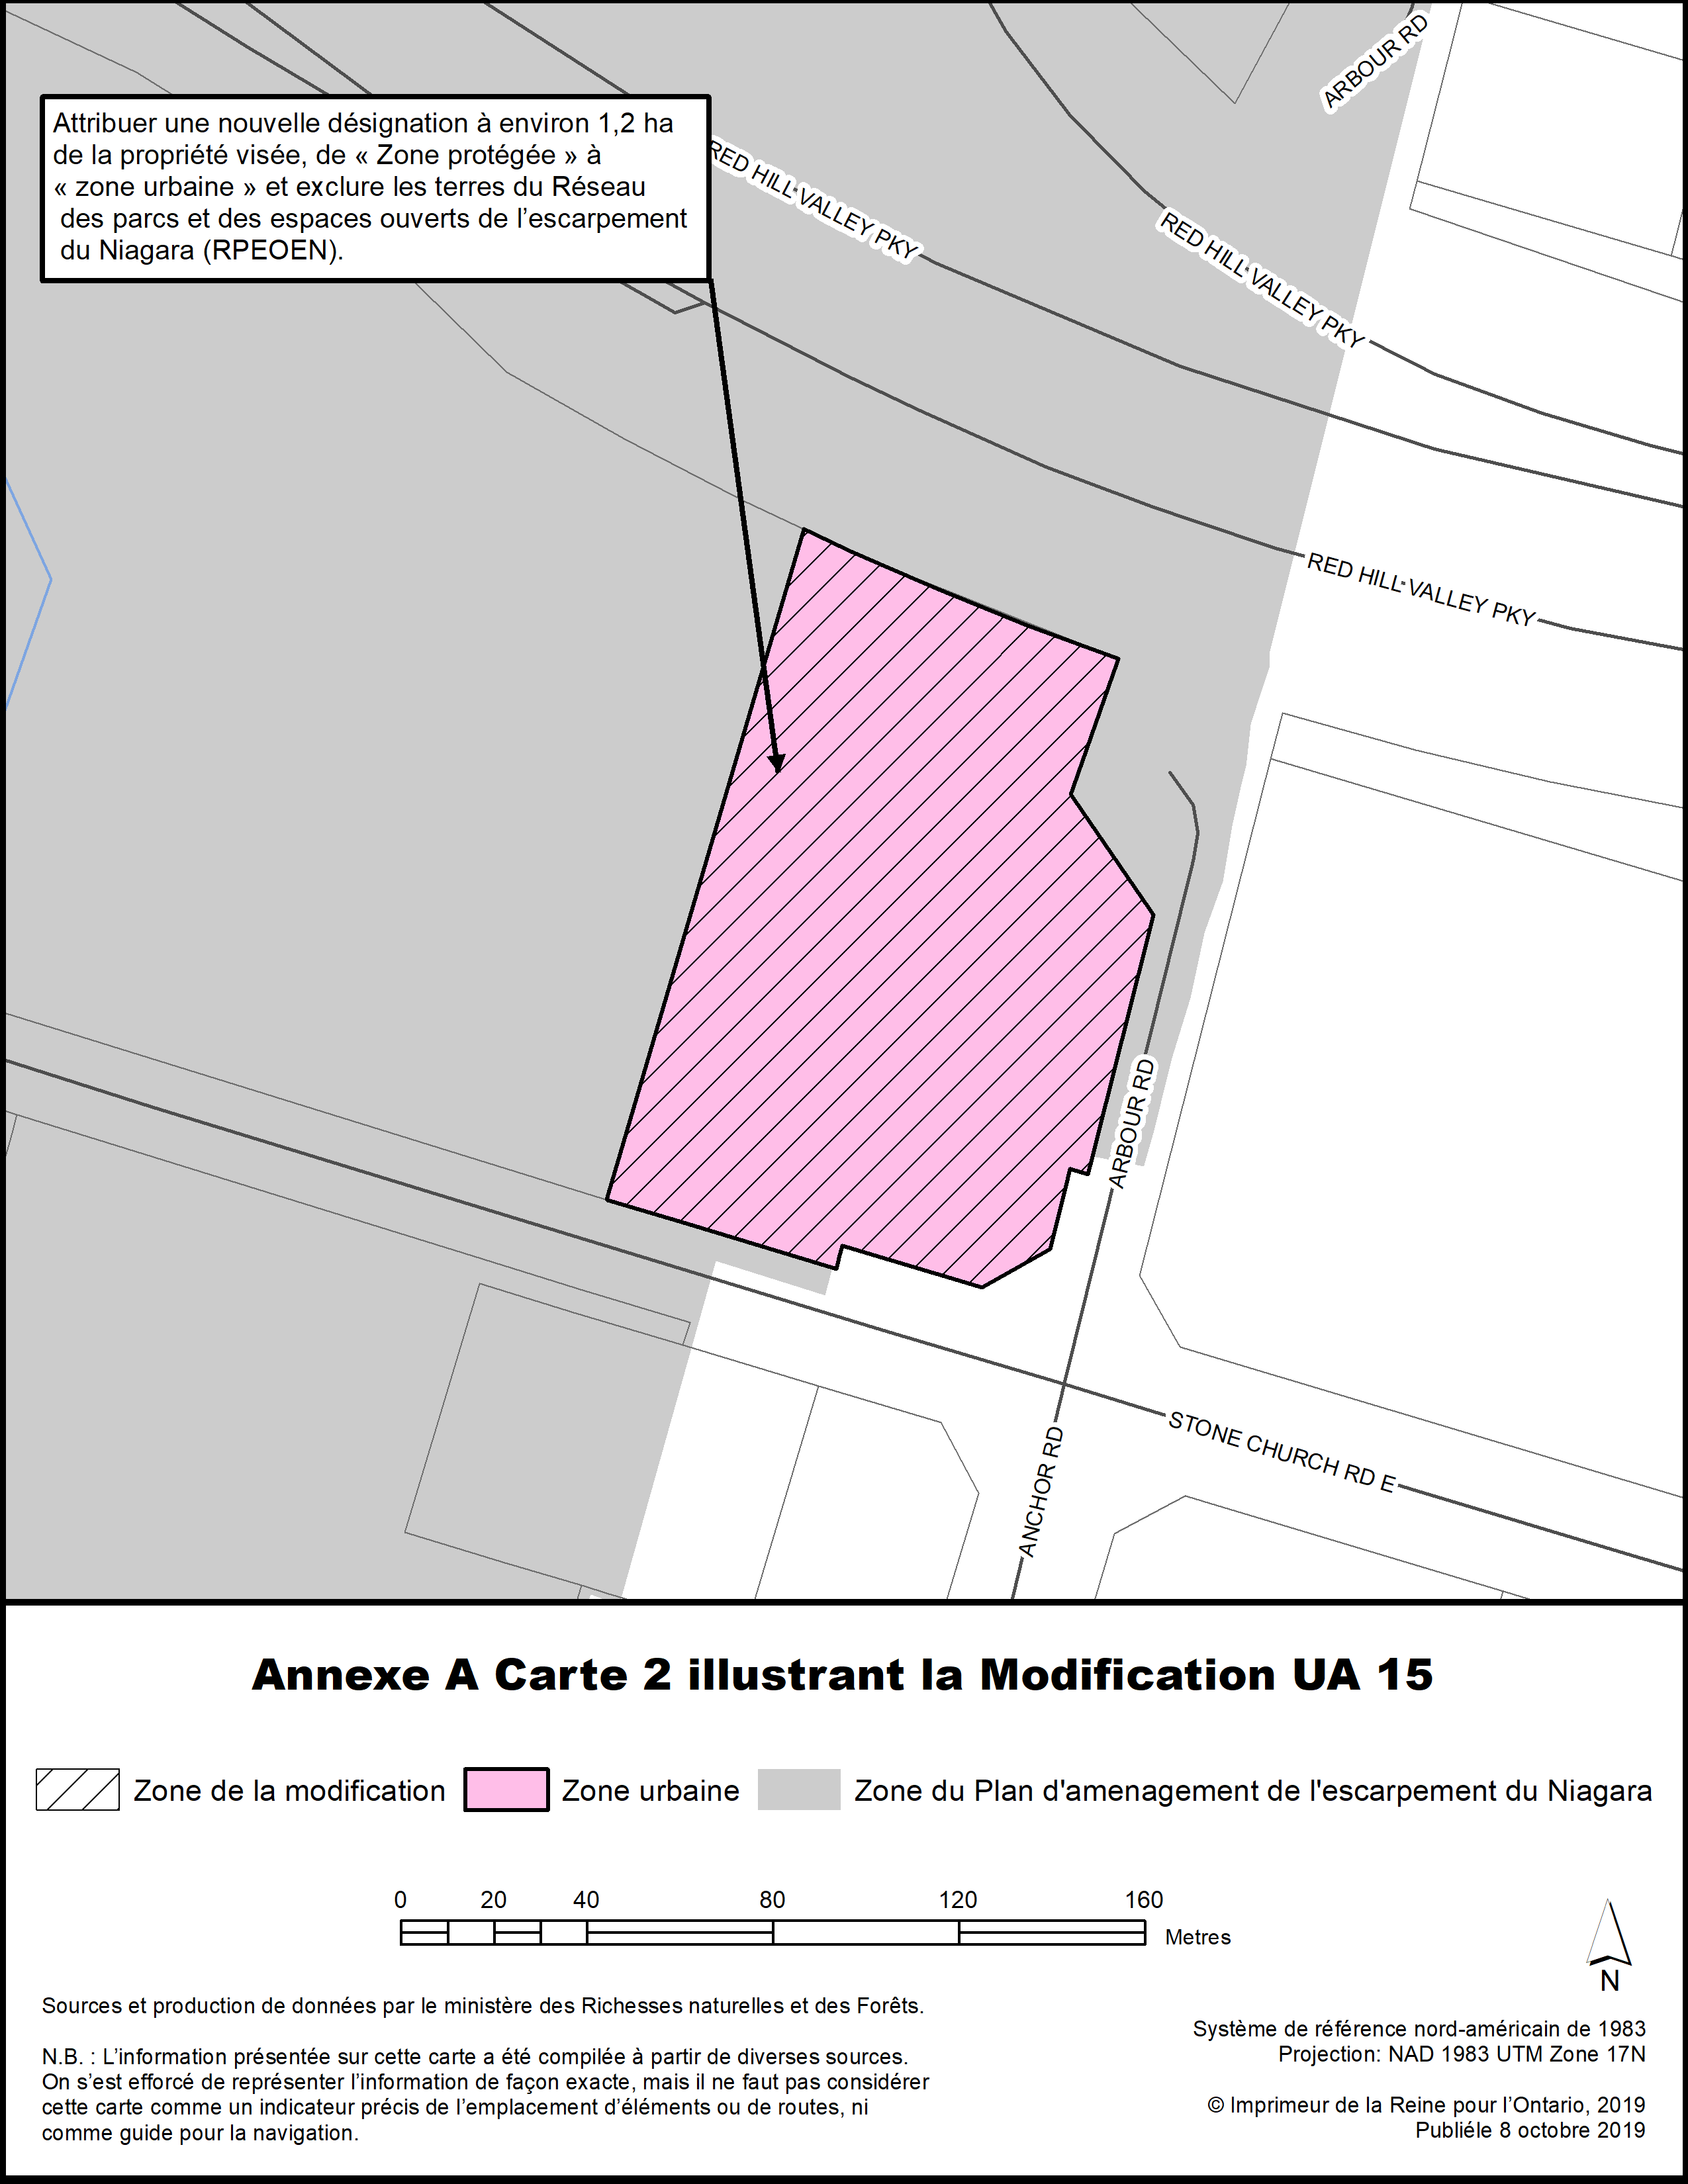 Annexe A Carte 2 illustrant la Modification UA 15.
Attribuer une nouvelle désignation à environ 1.2 ha de la propriété visée, de « Zone protégée » à « zone urbaine ».